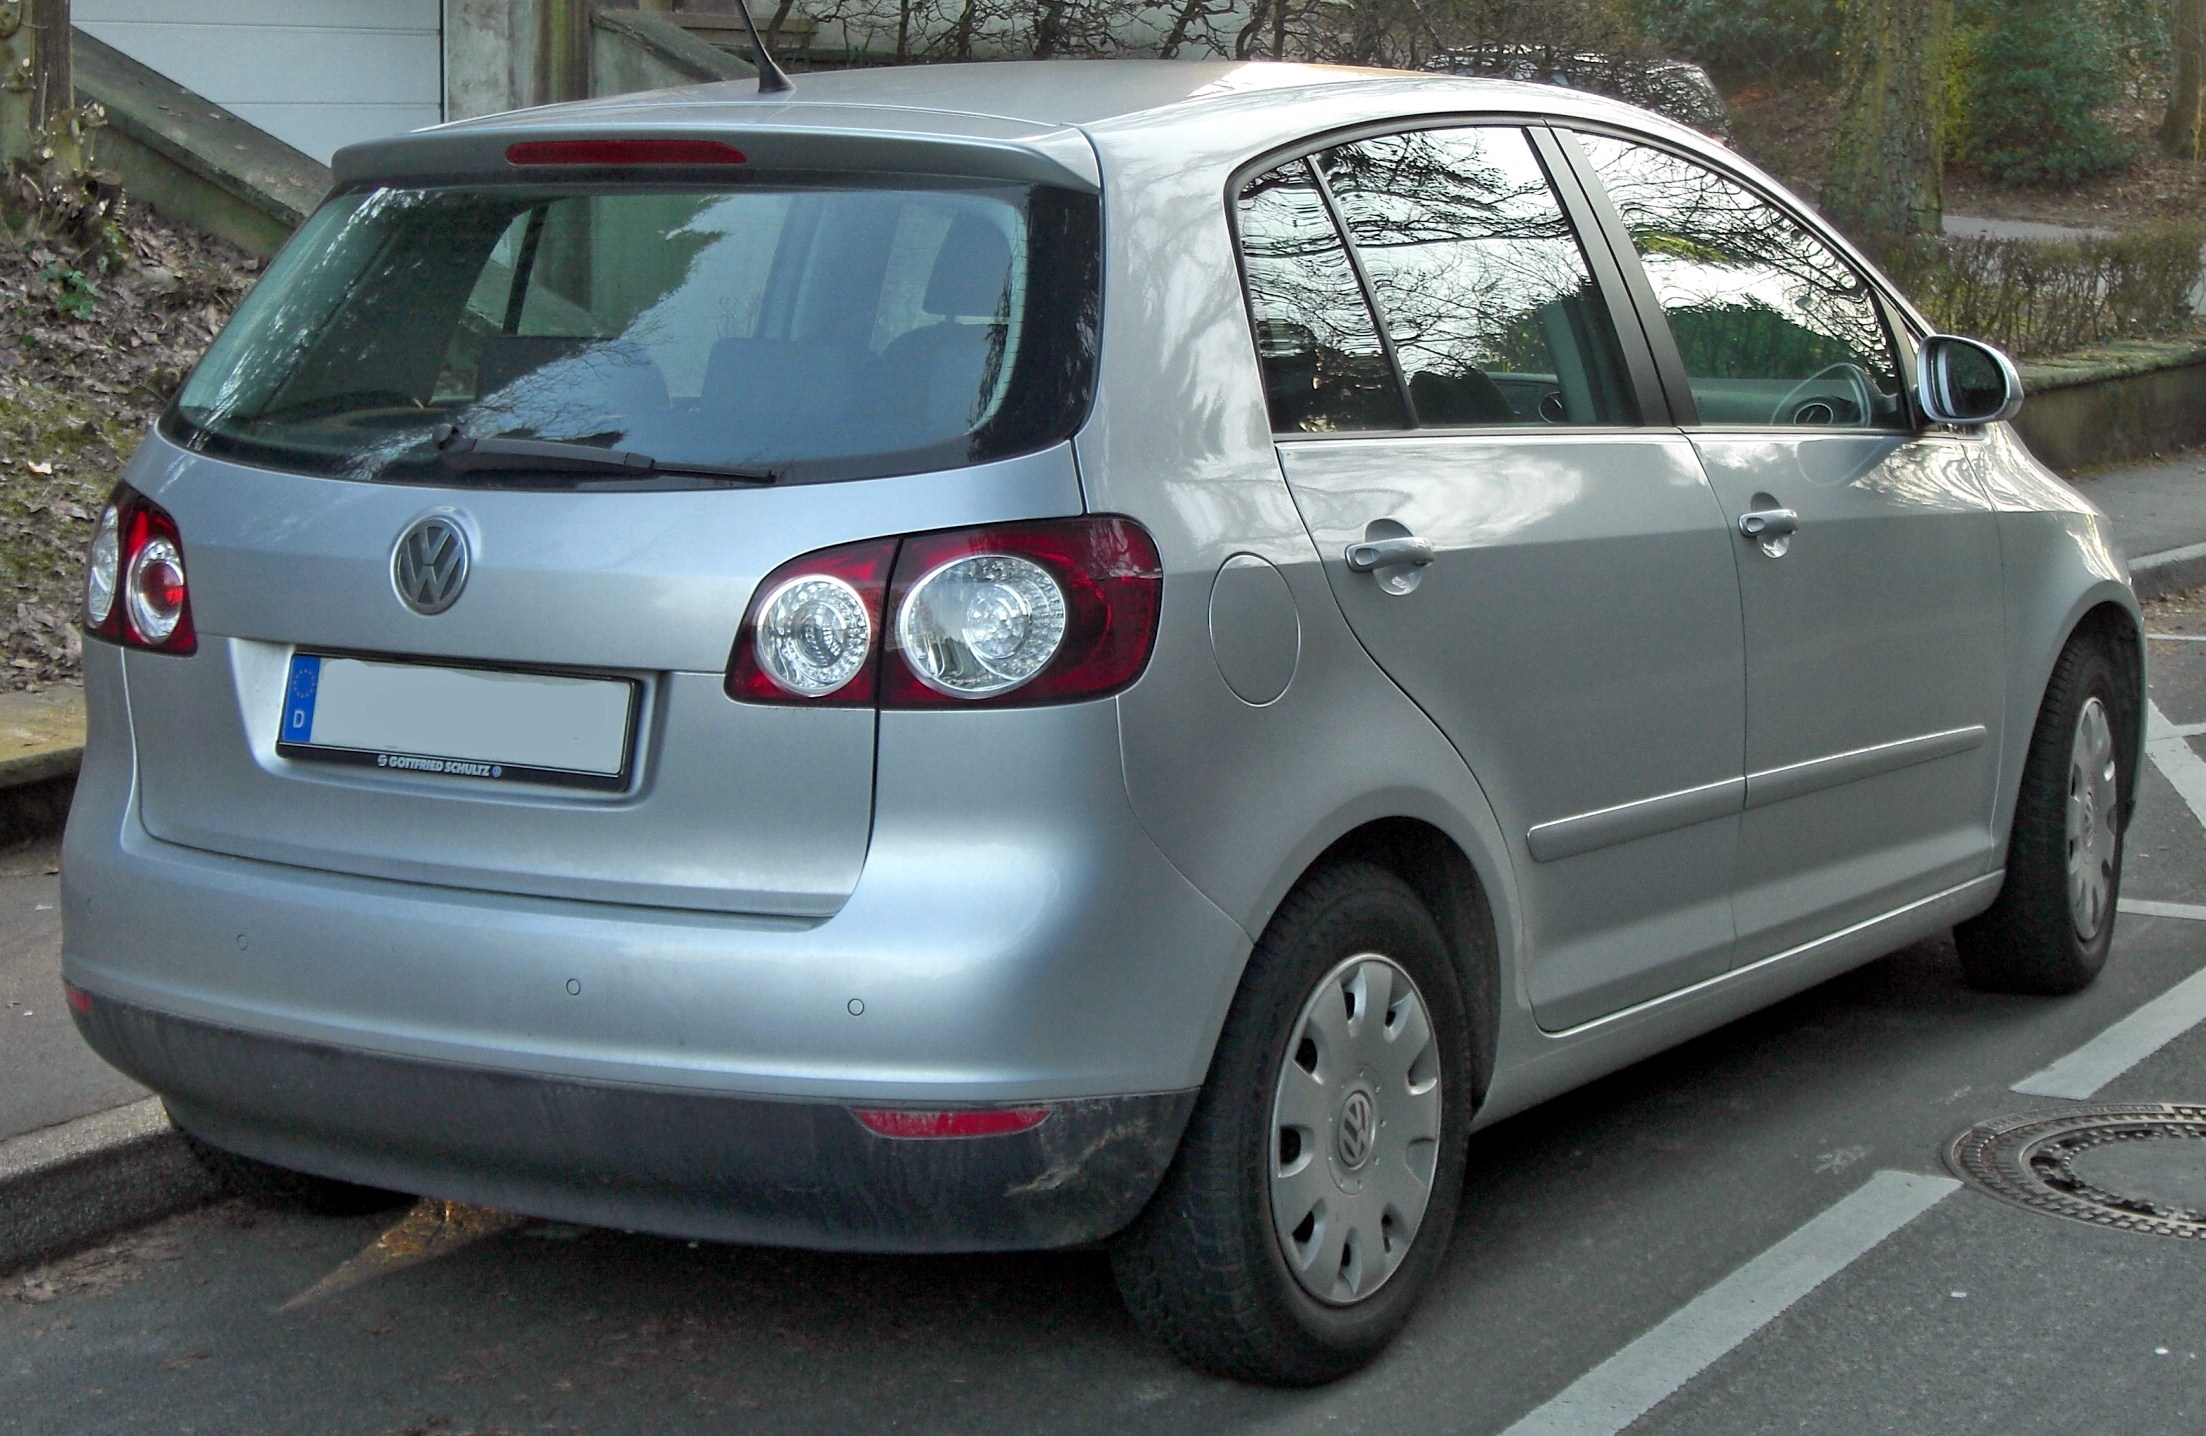 File:VW GOLF Plus rear.JPG - Wikimedia Commons